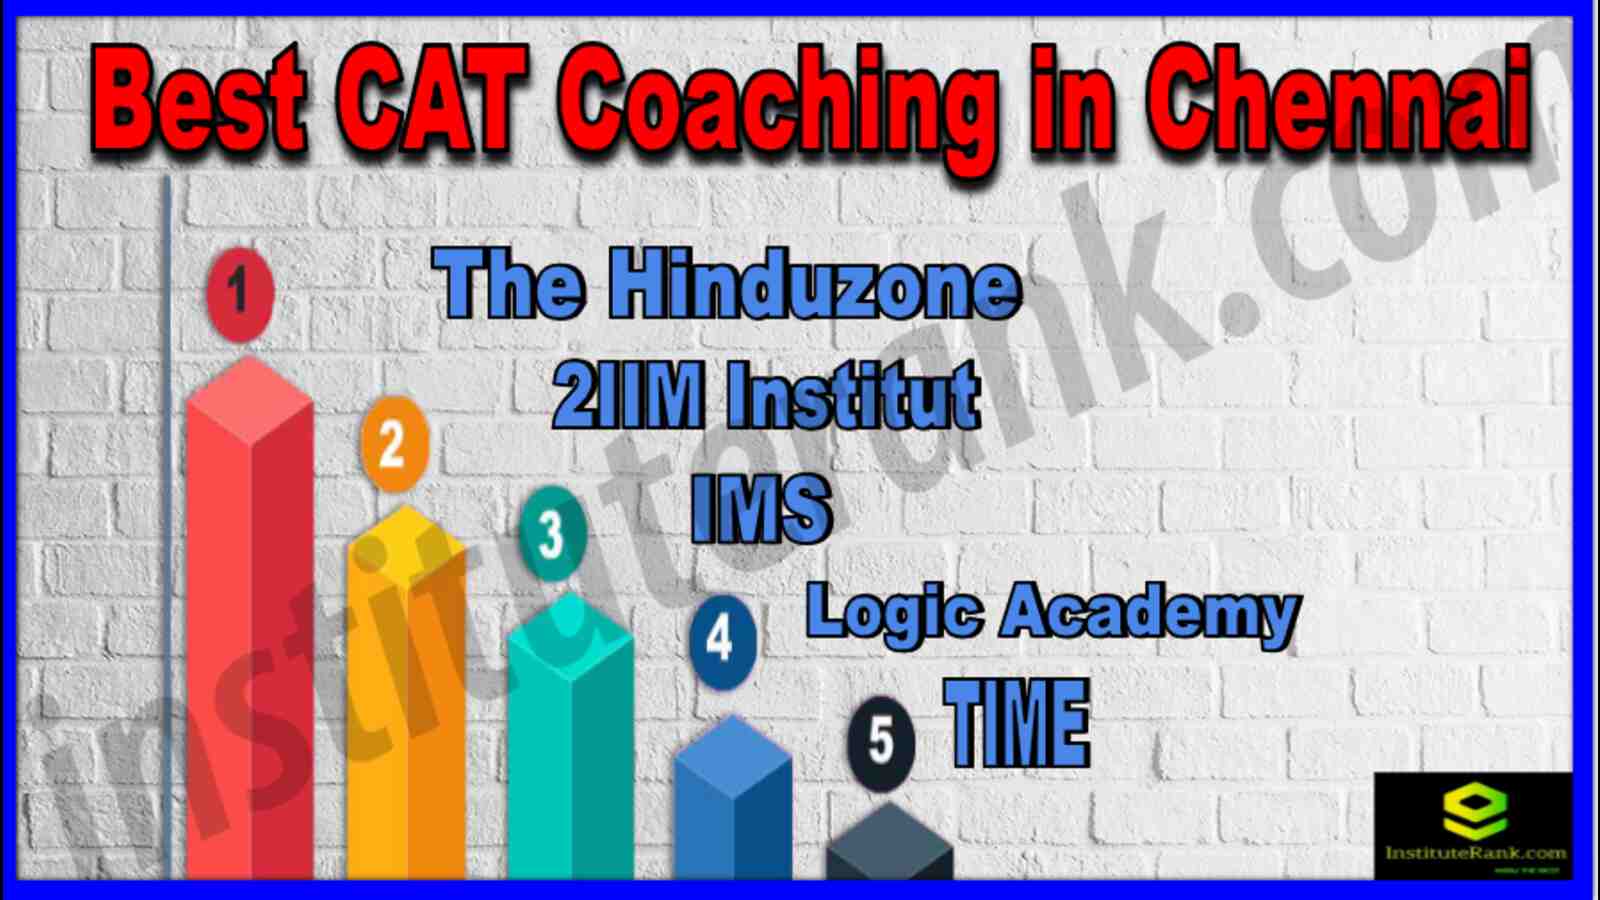 Best CAT Coaching in Chennai